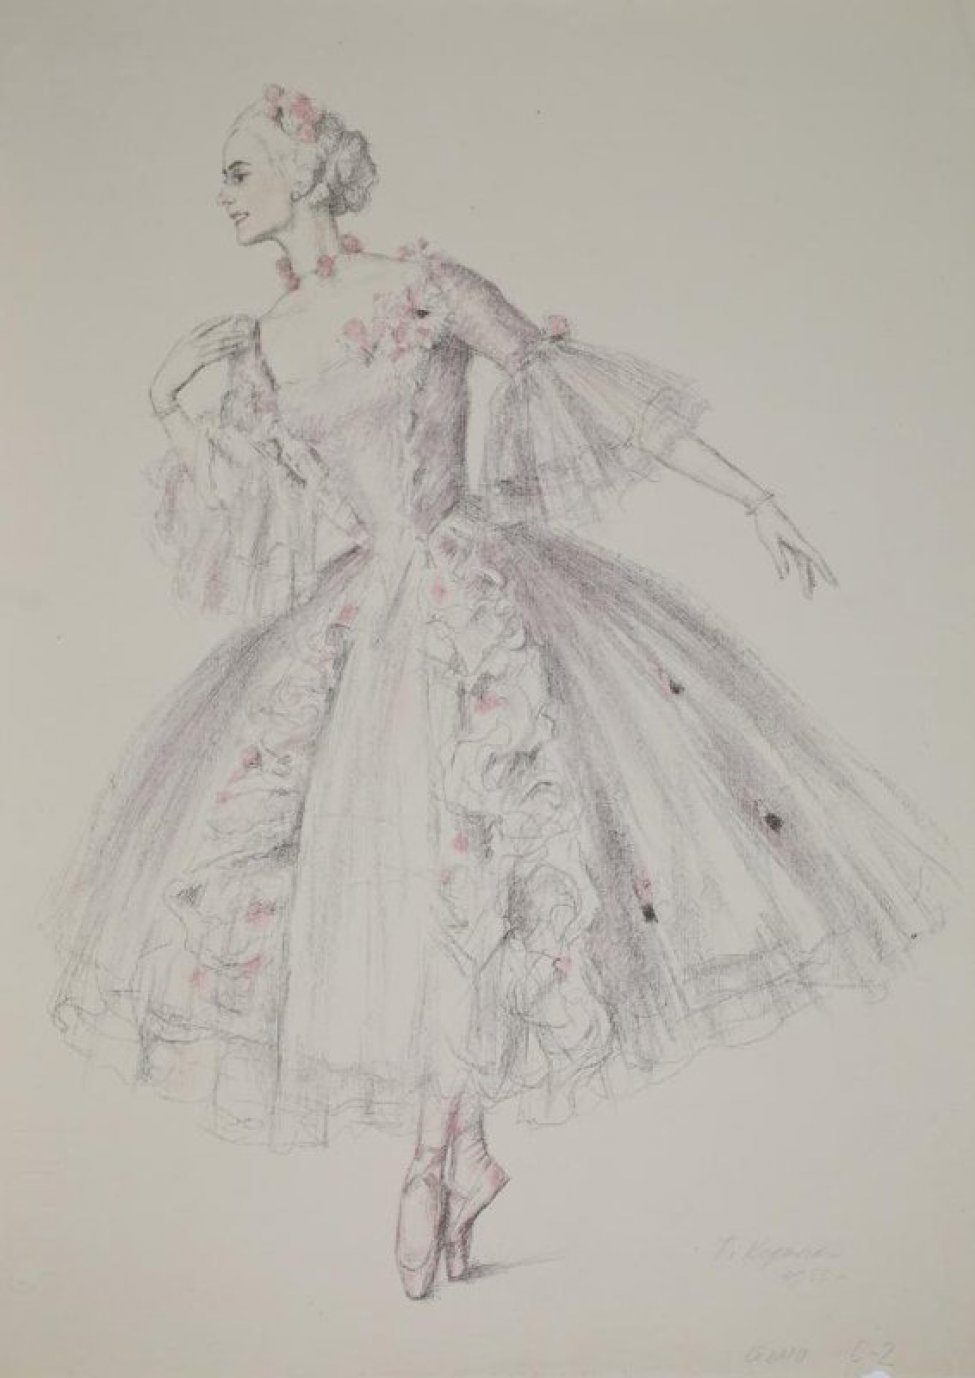 Изображена балерина, стоящая на пуантах, в длинном пышном платье с оборками  и розами. Правая рука поднята к плечу, левая вытянута вниз и чуть отведена в сторону.